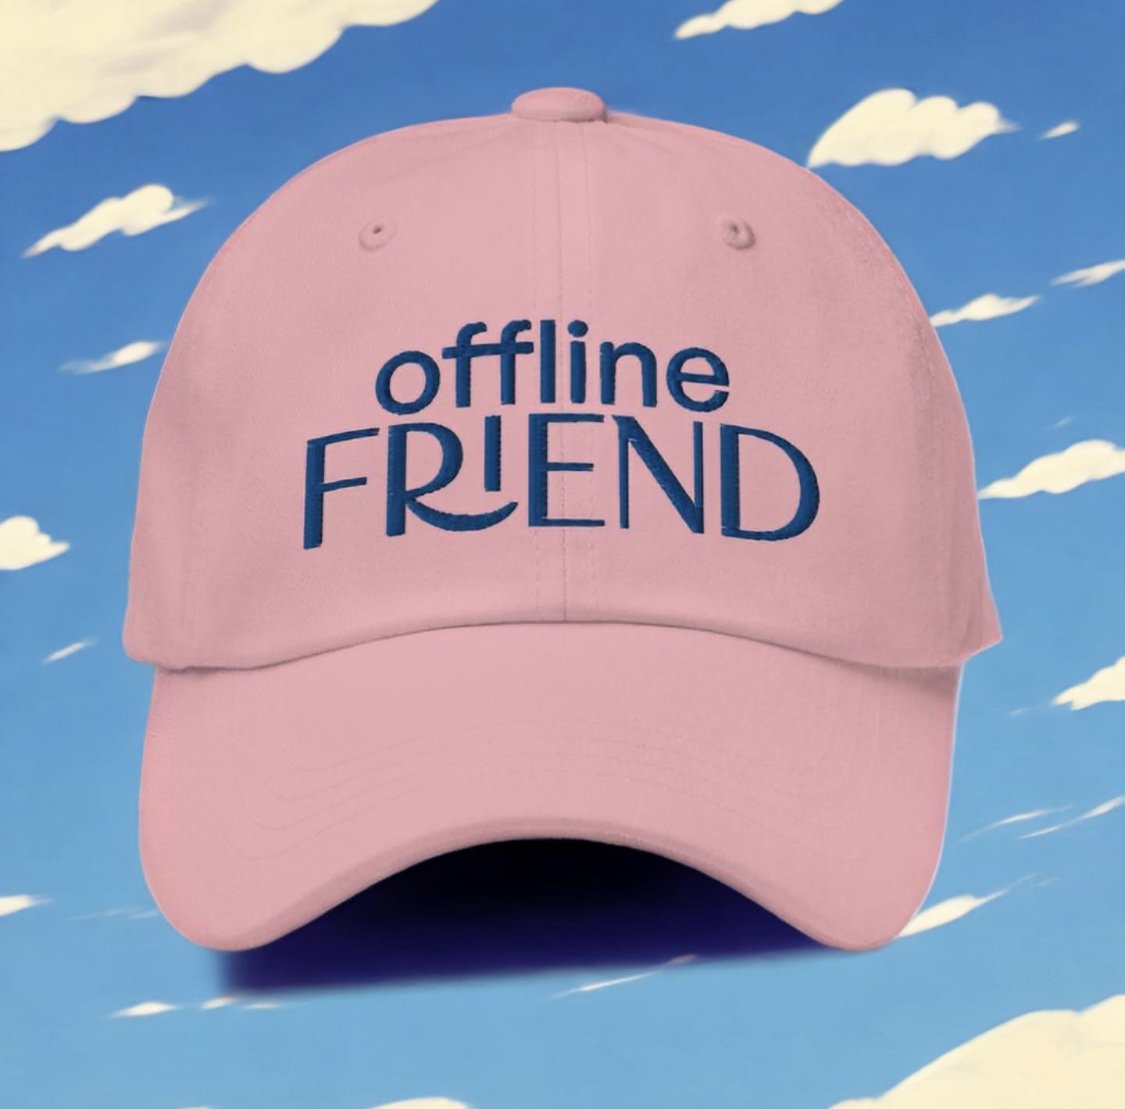 Offline Friend cap by DNAMAG